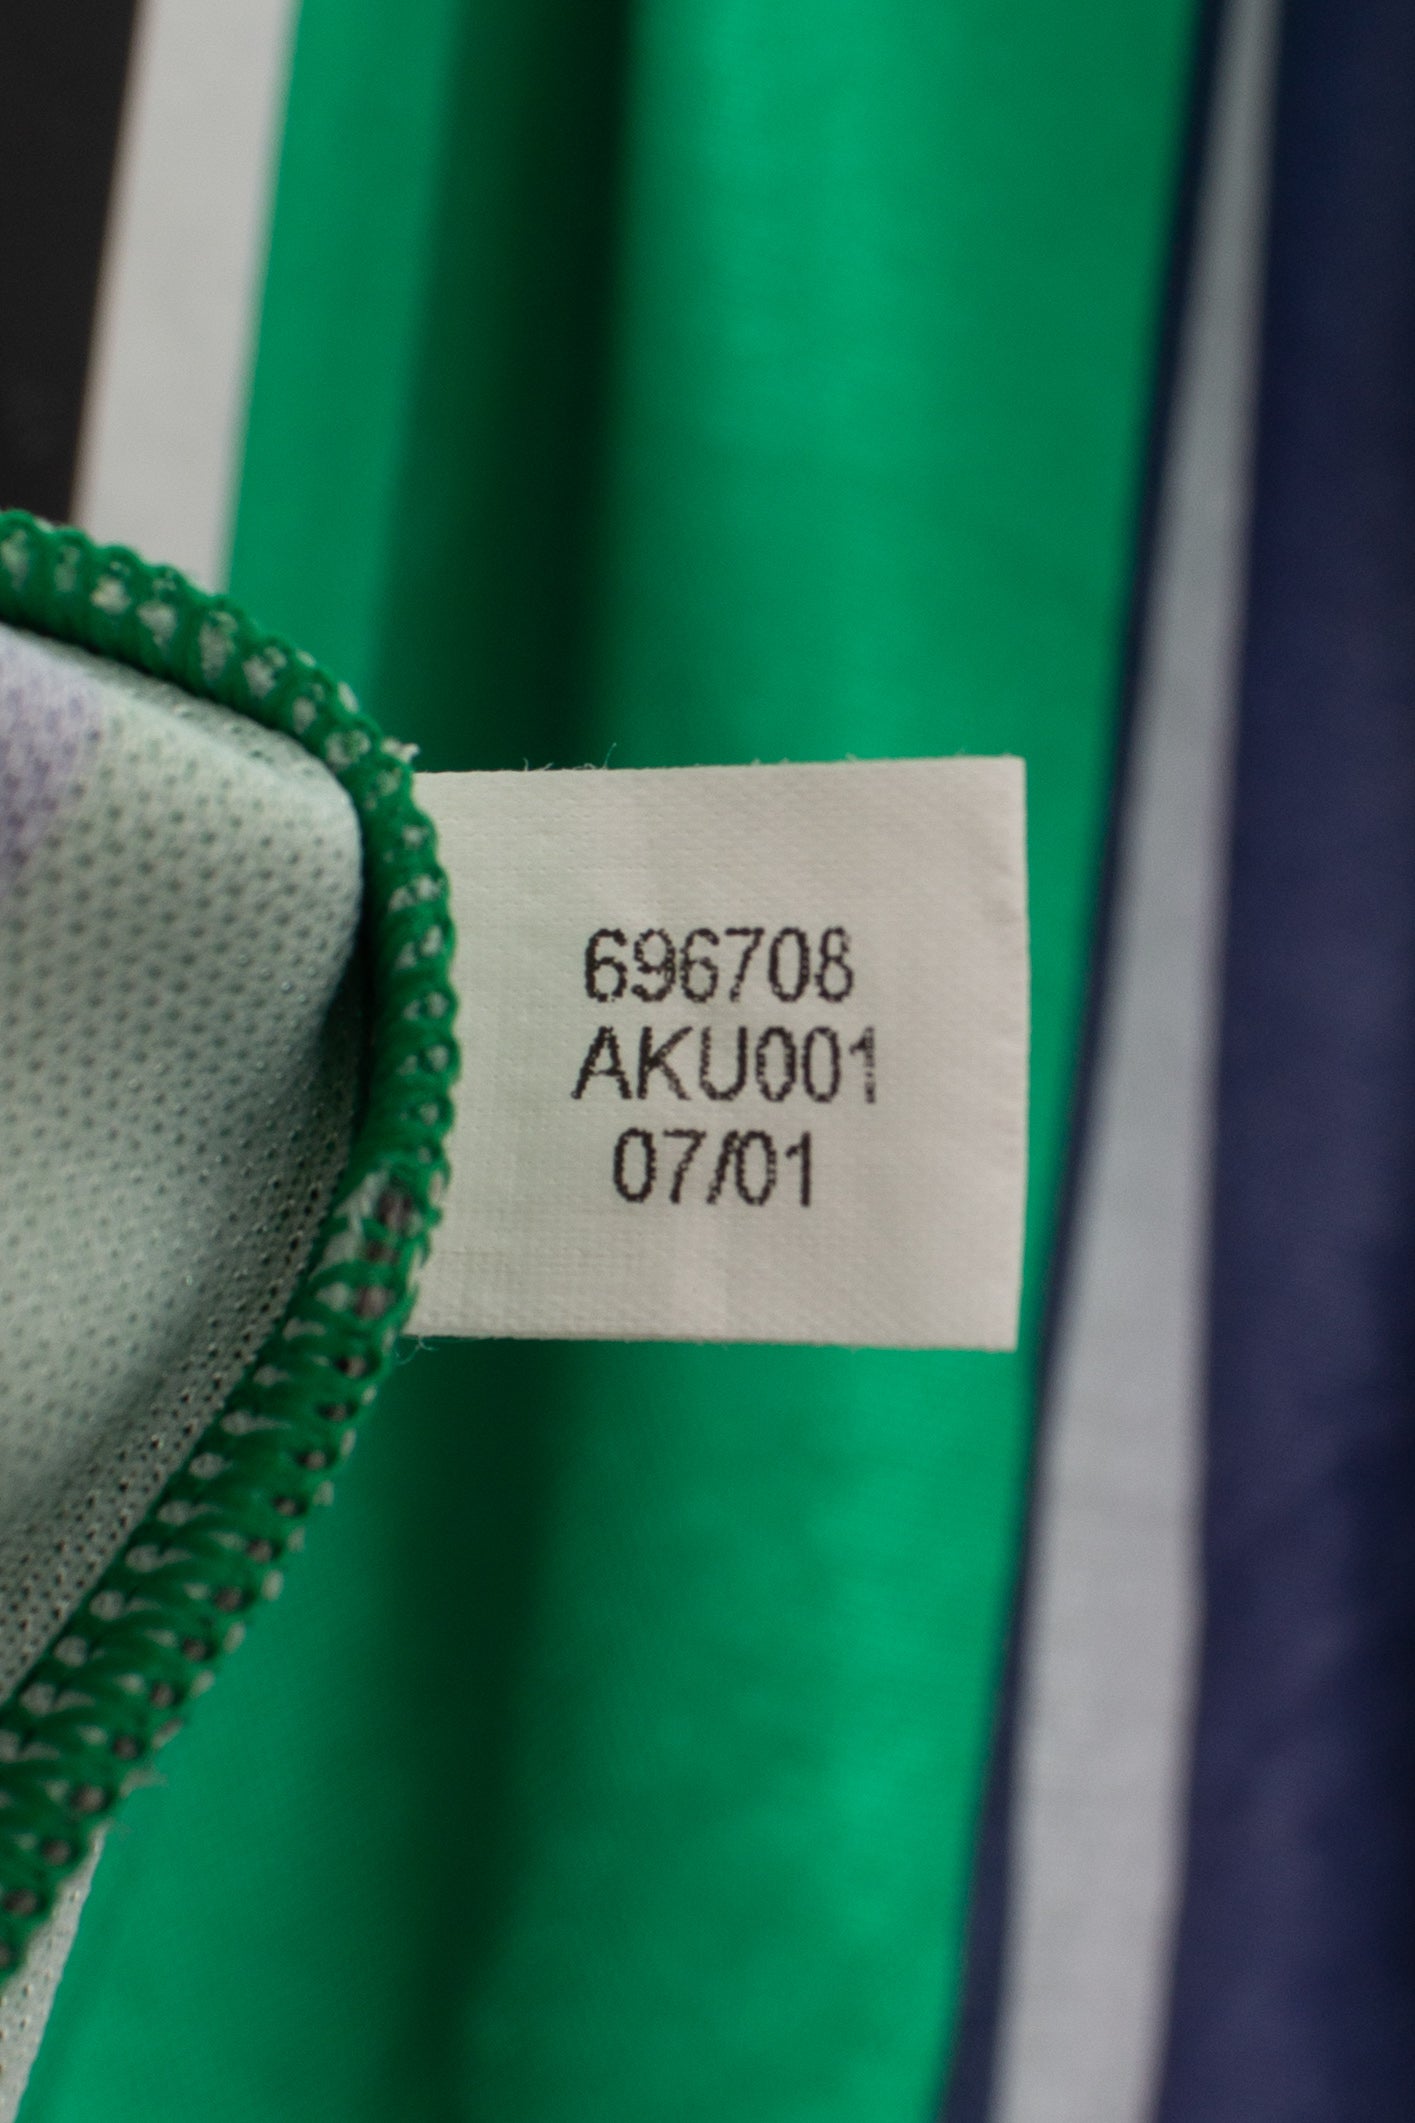 Adidas 2000s Goalkeeper Template Shirt (#1) (M)